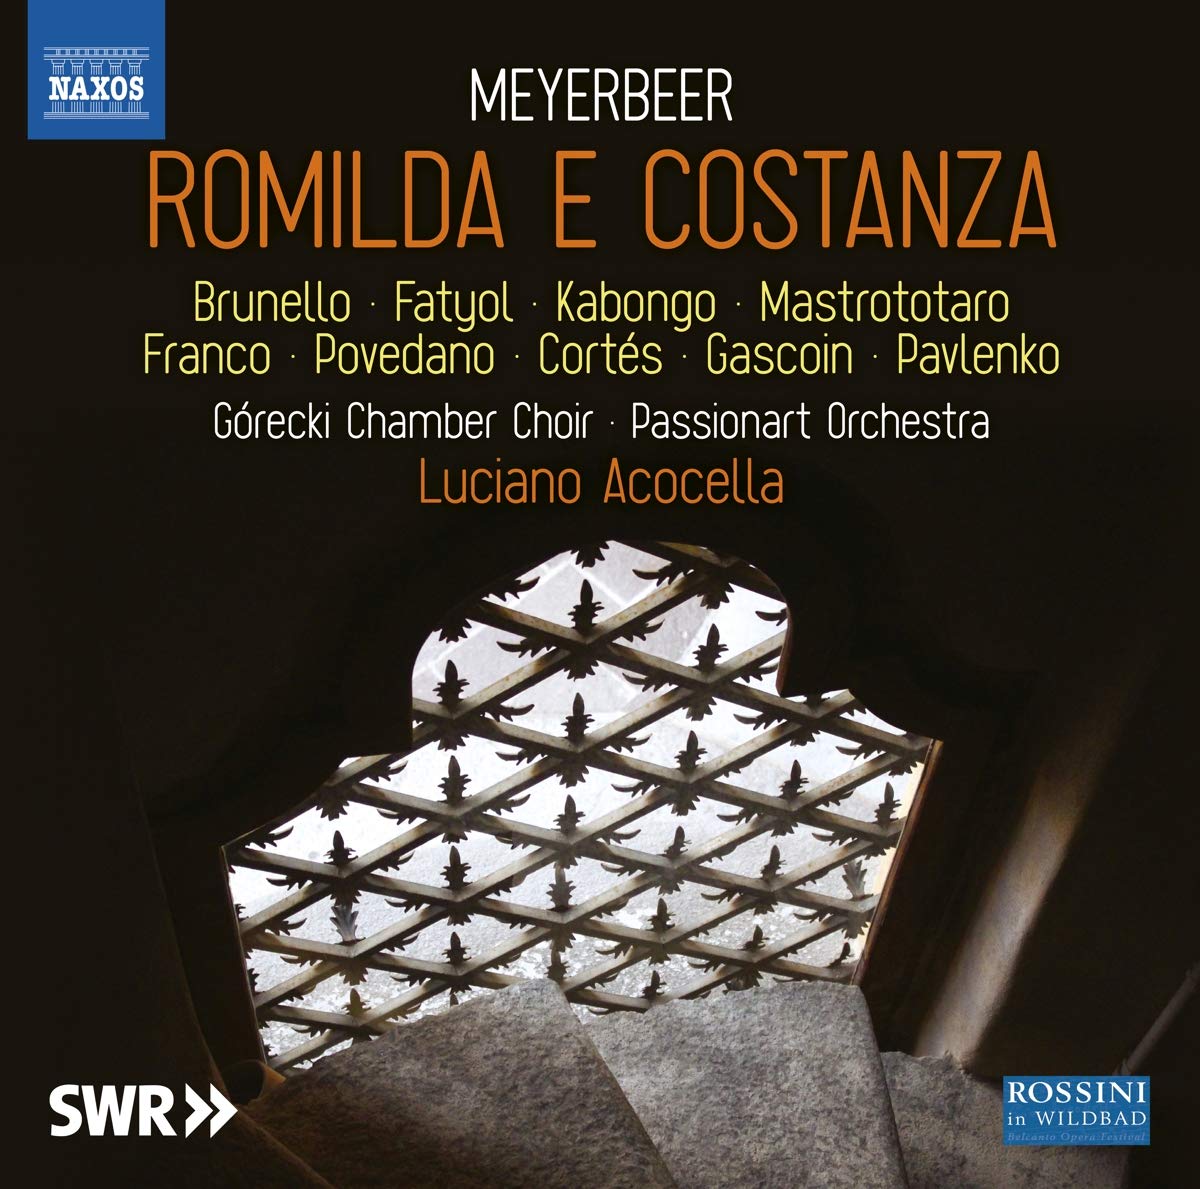 Audio Cd Giacomo Meyerbeer - Romilda E Constanza (3 Cd) NUOVO SIGILLATO, EDIZIONE DEL 13/10/2020 SUBITO DISPONIBILE